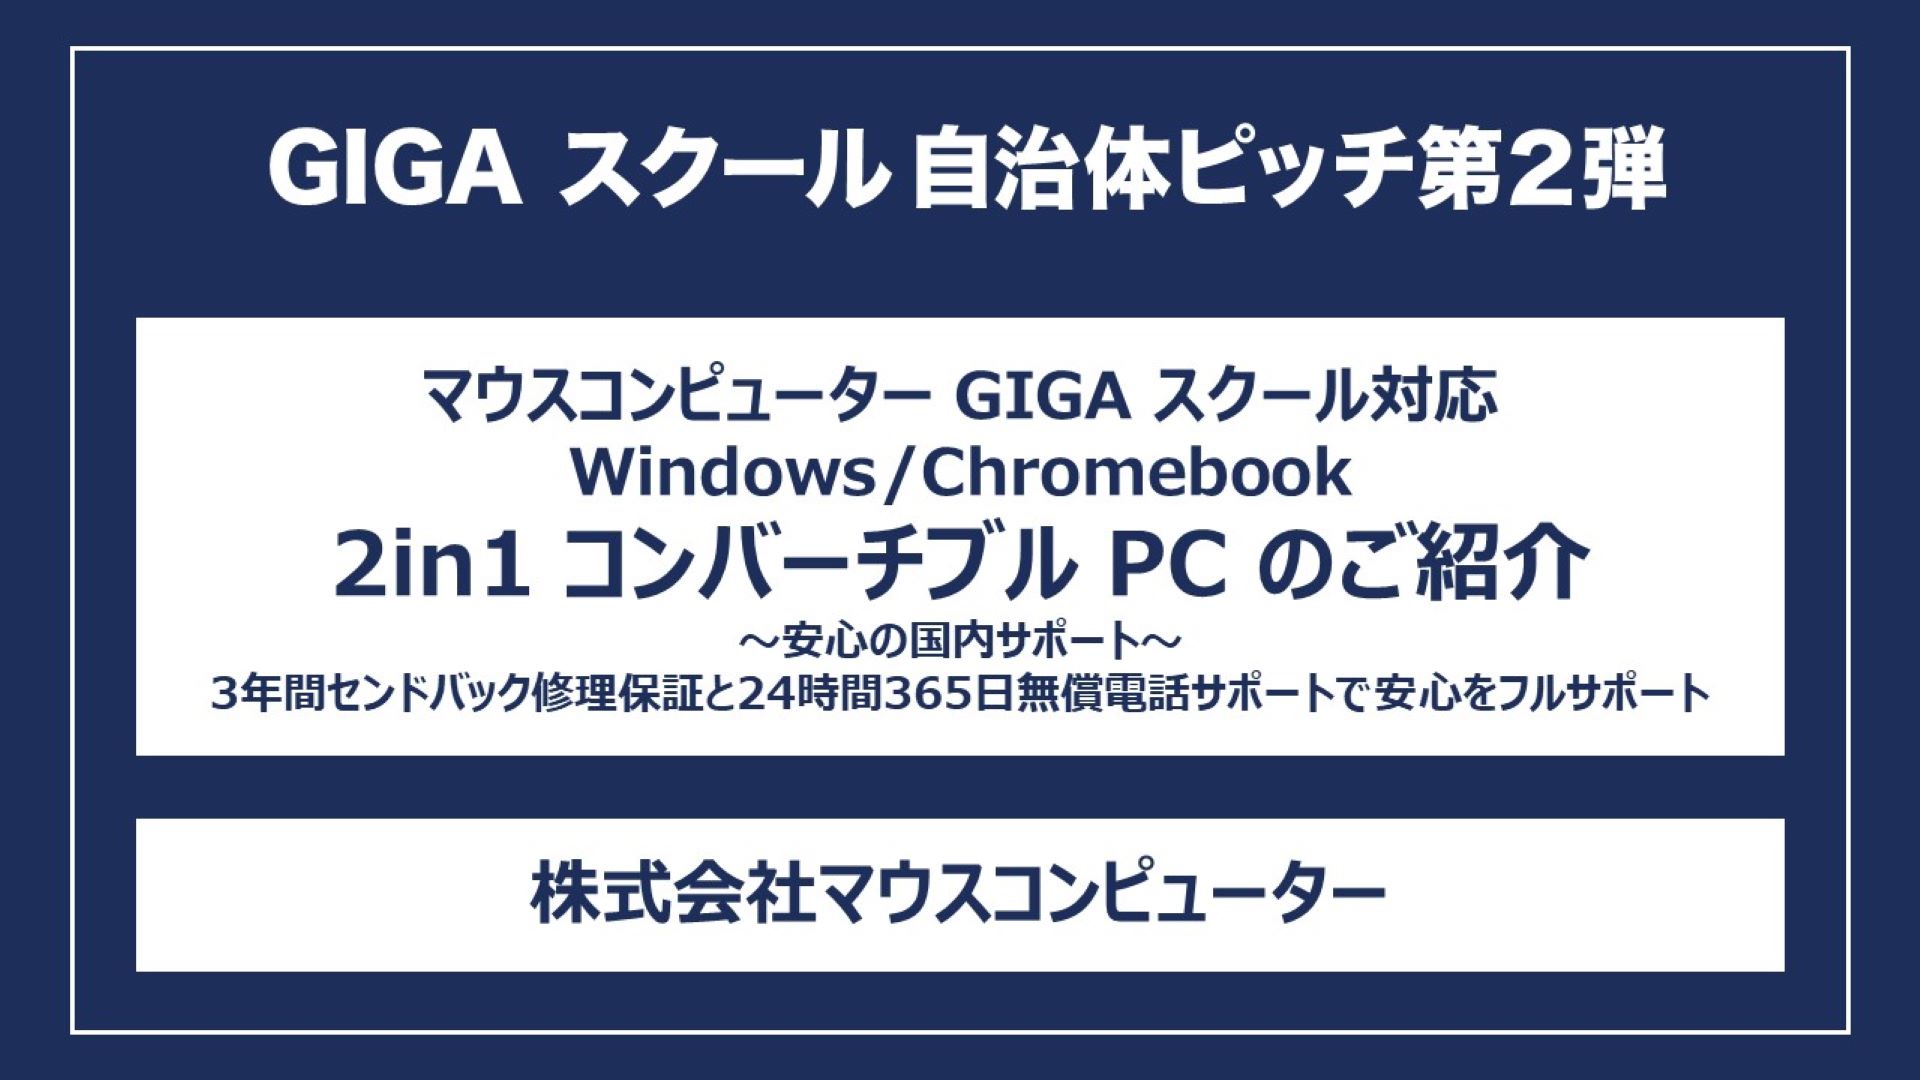 マウスコンピューター GIGA スクール対応 Windows/Chromebook 2in1 コンバーチブル PC のご紹介～安心の国内サポート～3年間センドバック修理保証と24時間365日無償電話サポートで安心をフルサポート